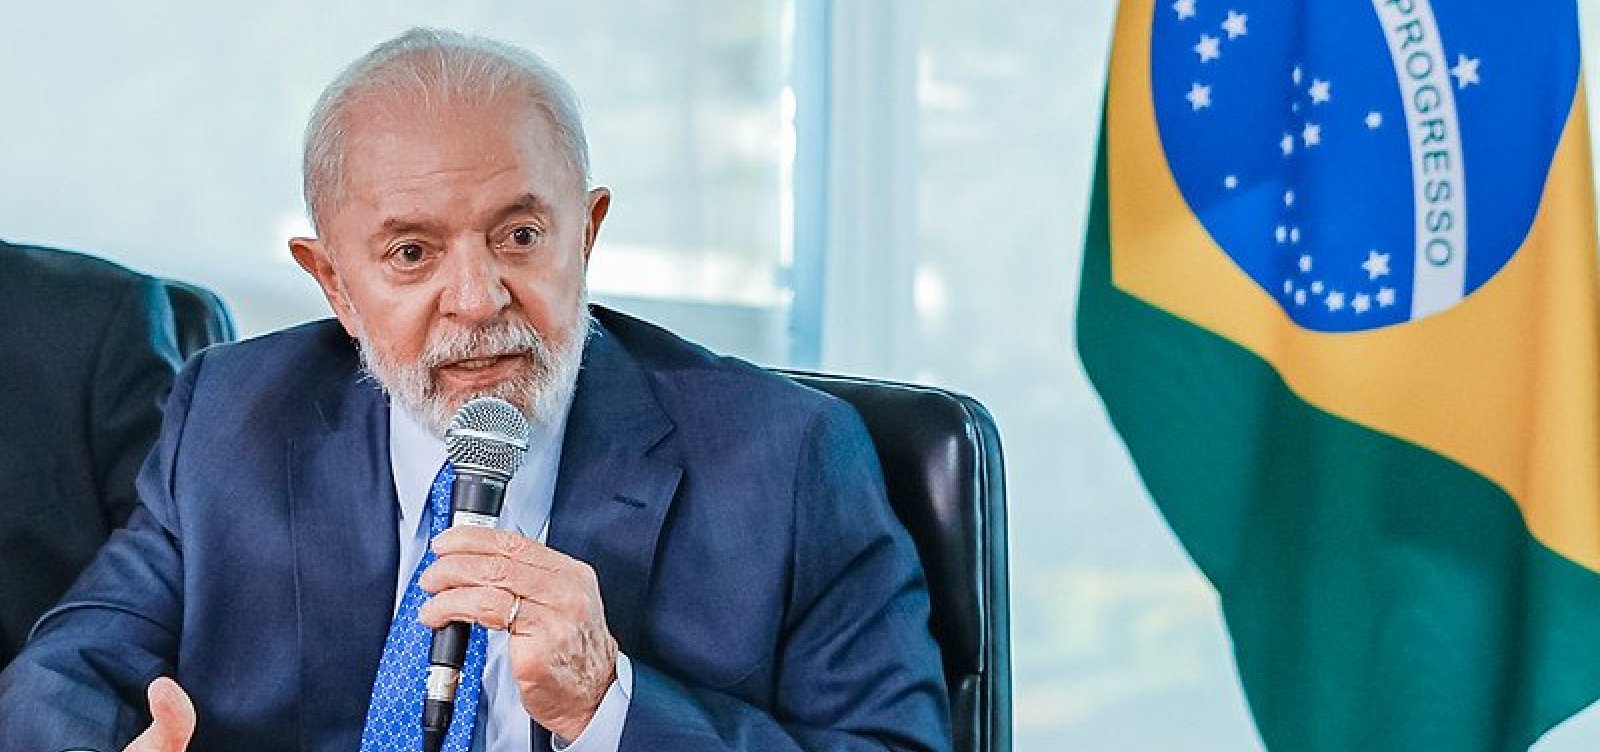 Lula foi monitorado pelo governo dos EUA, afirma jornalista